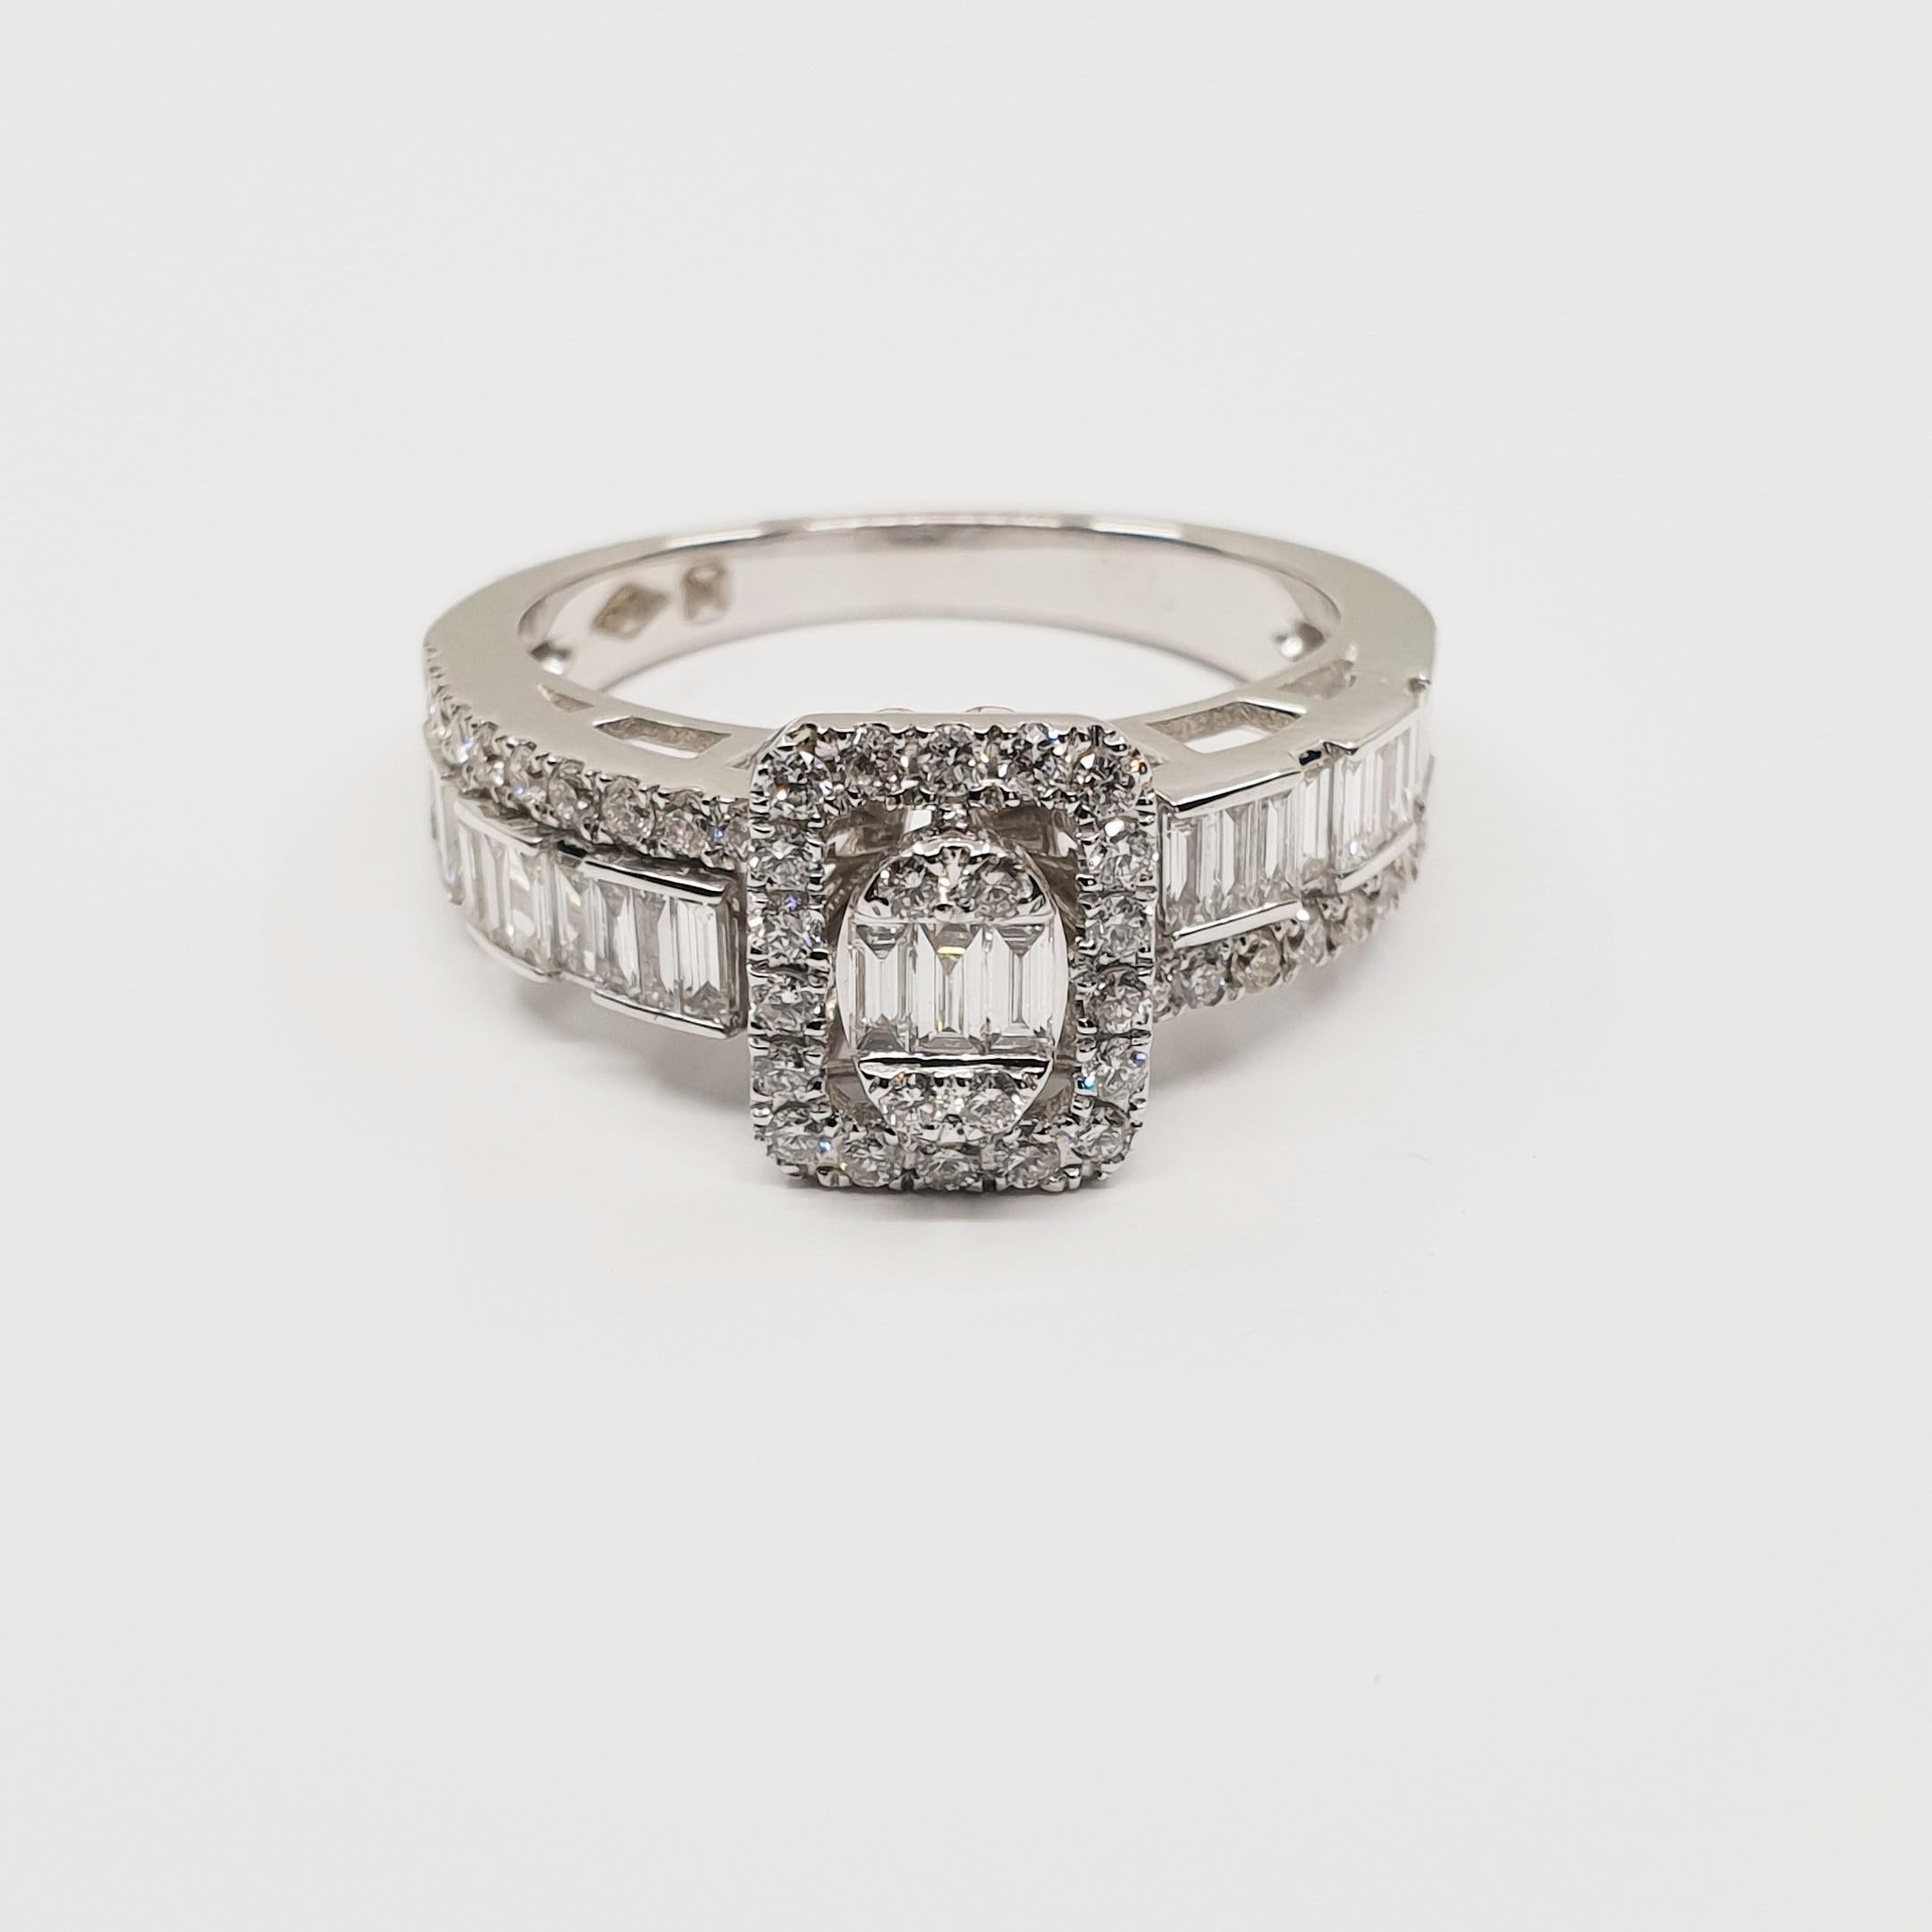 Bague en or 18k de 0,87 carat de diamants F-G/VS, taille baguette et brillante

Magnifique pièce de haute joaillerie avec un total de 0.87 carats.
Finition haute brillance. Bague finement réalisée à la main en or blanc 18k. 
Possibilité de